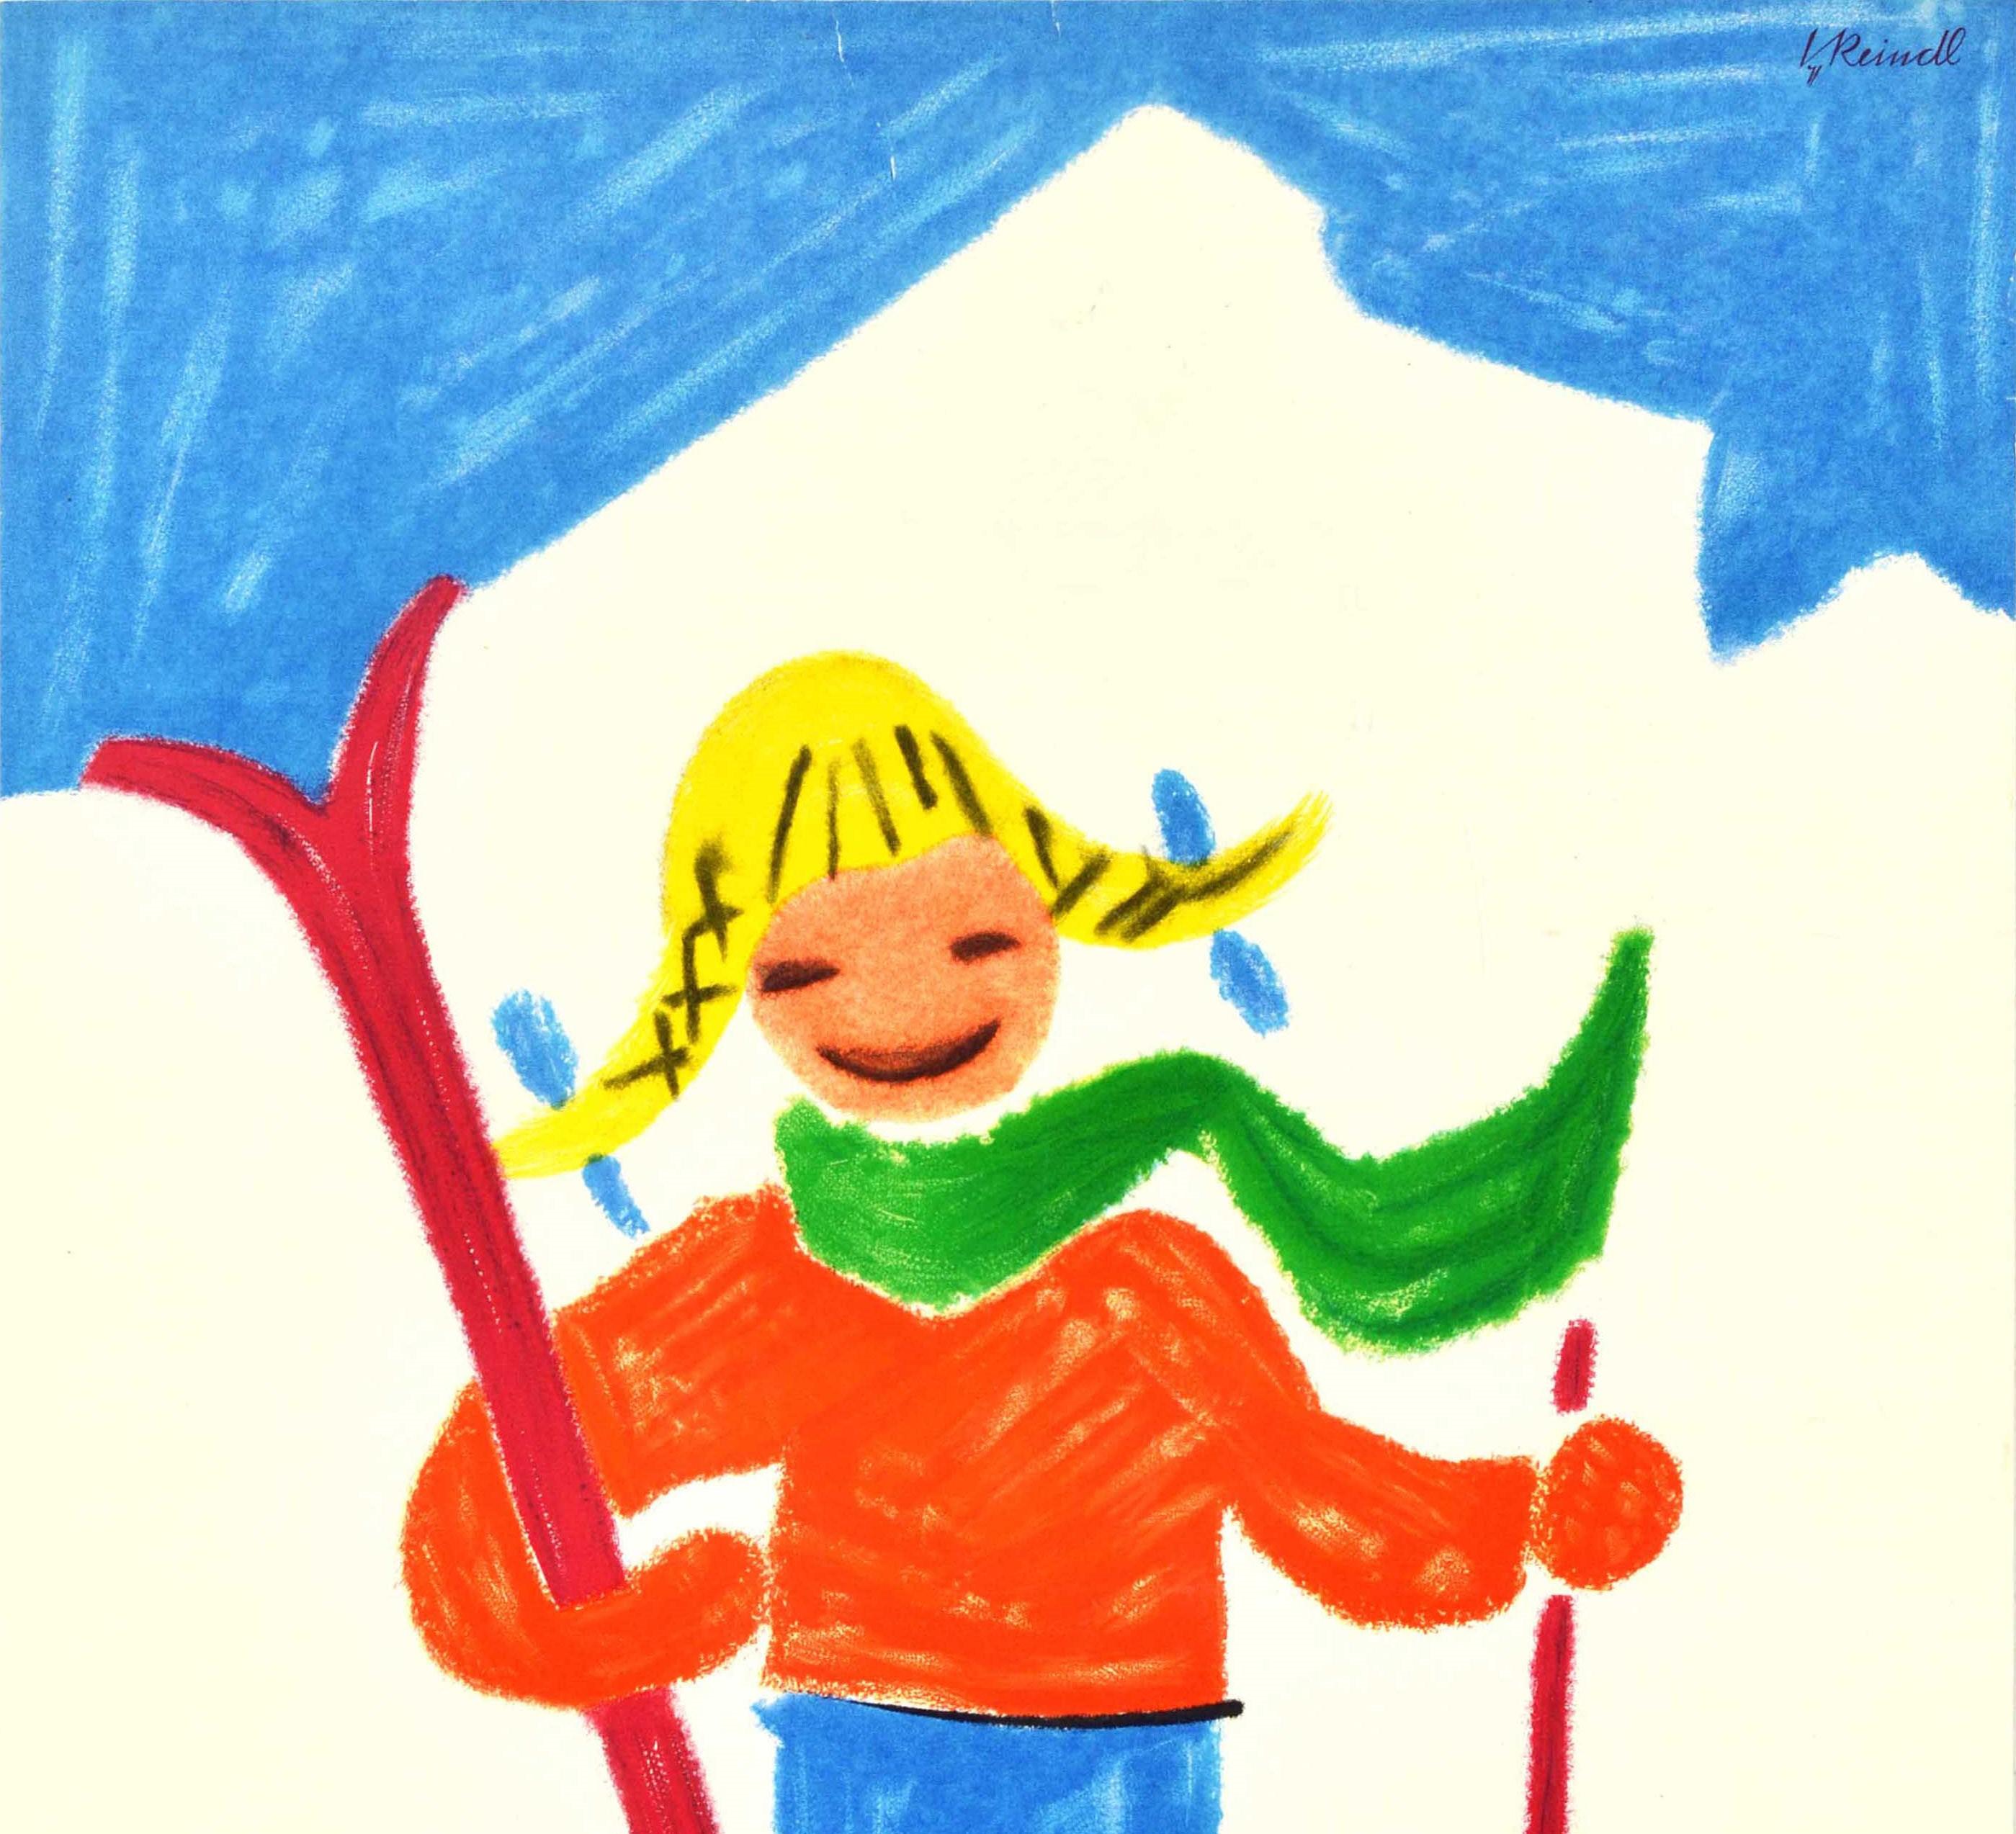 Original Vintage Winter Sport Ski Poster Garmisch Partenkirchen Bavaria Germany - Print by Reindl